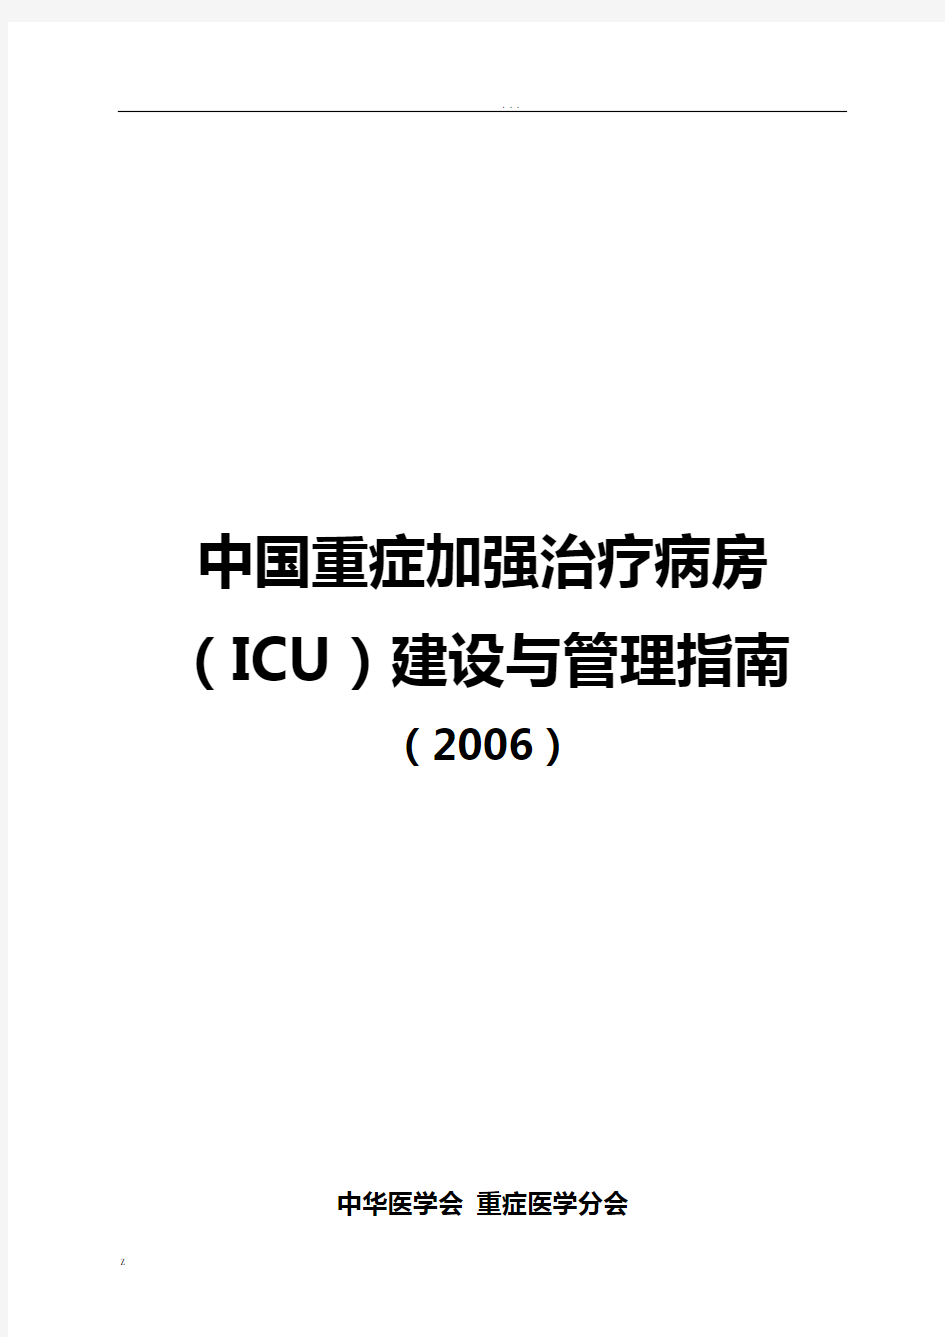 中国重症加强治疗病房(ICU)建设与管理指南